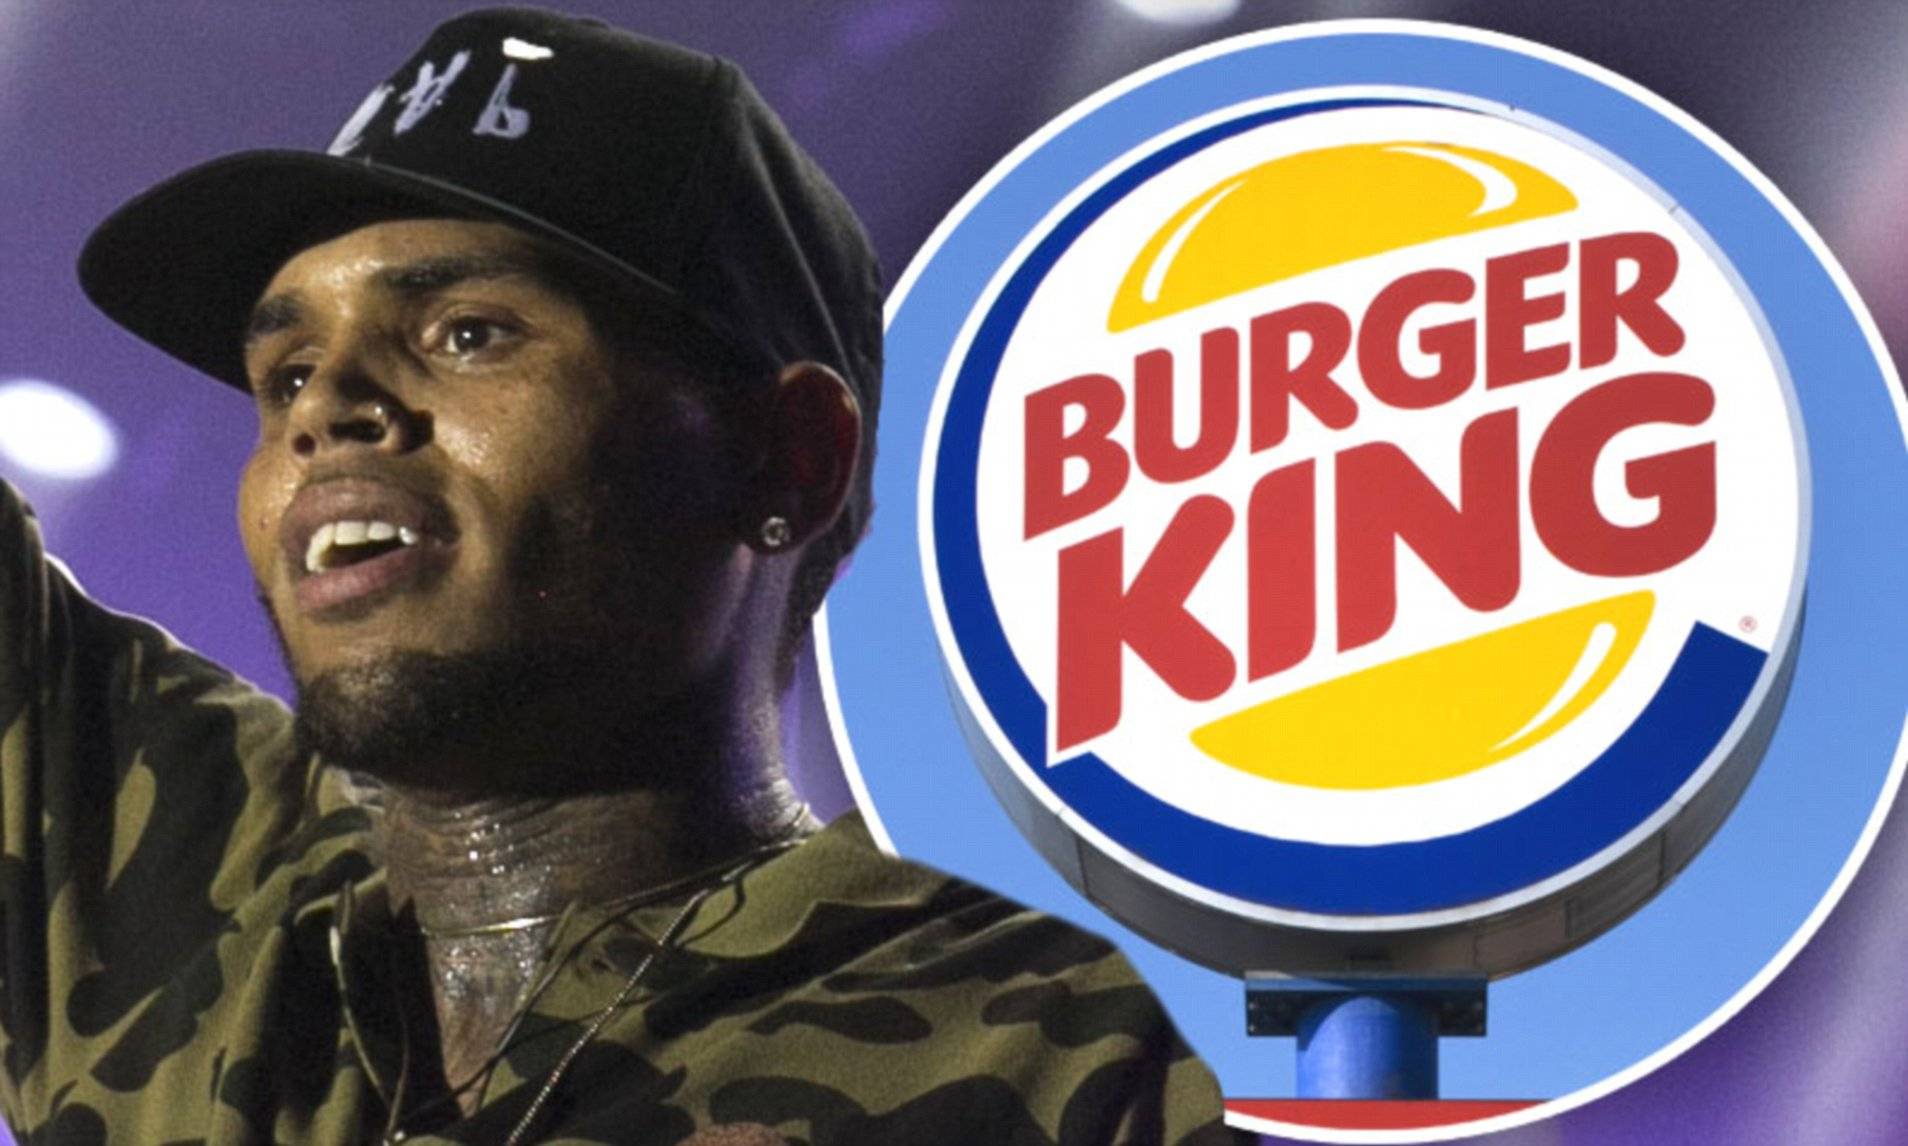 Chris Burger King